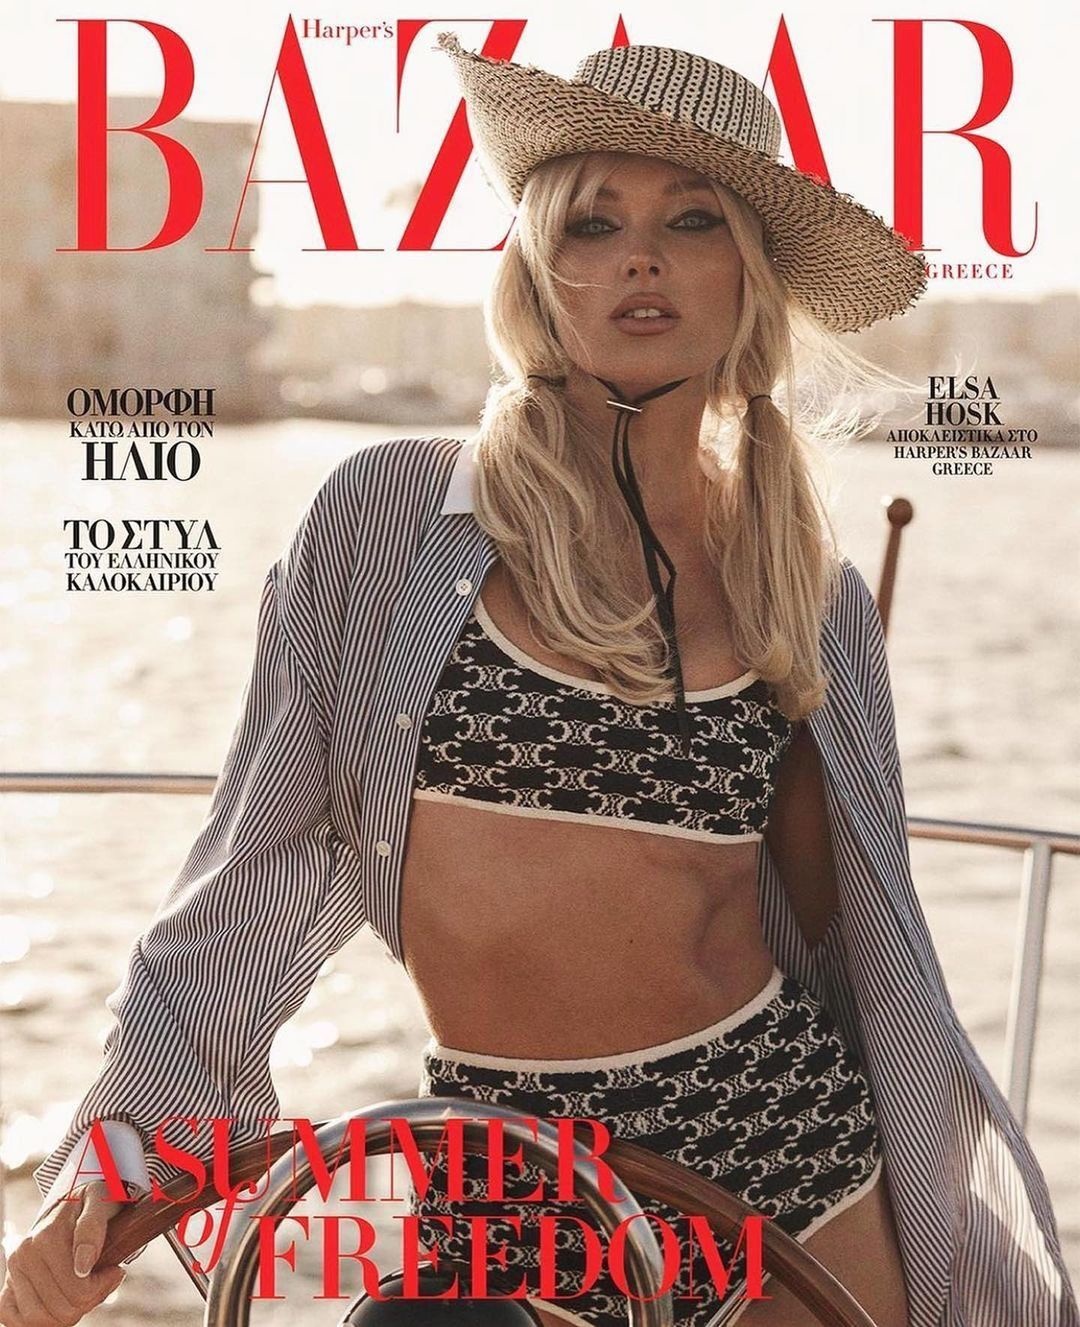 Harper's Bazaar Greece June 2022 Cover Story Editorial